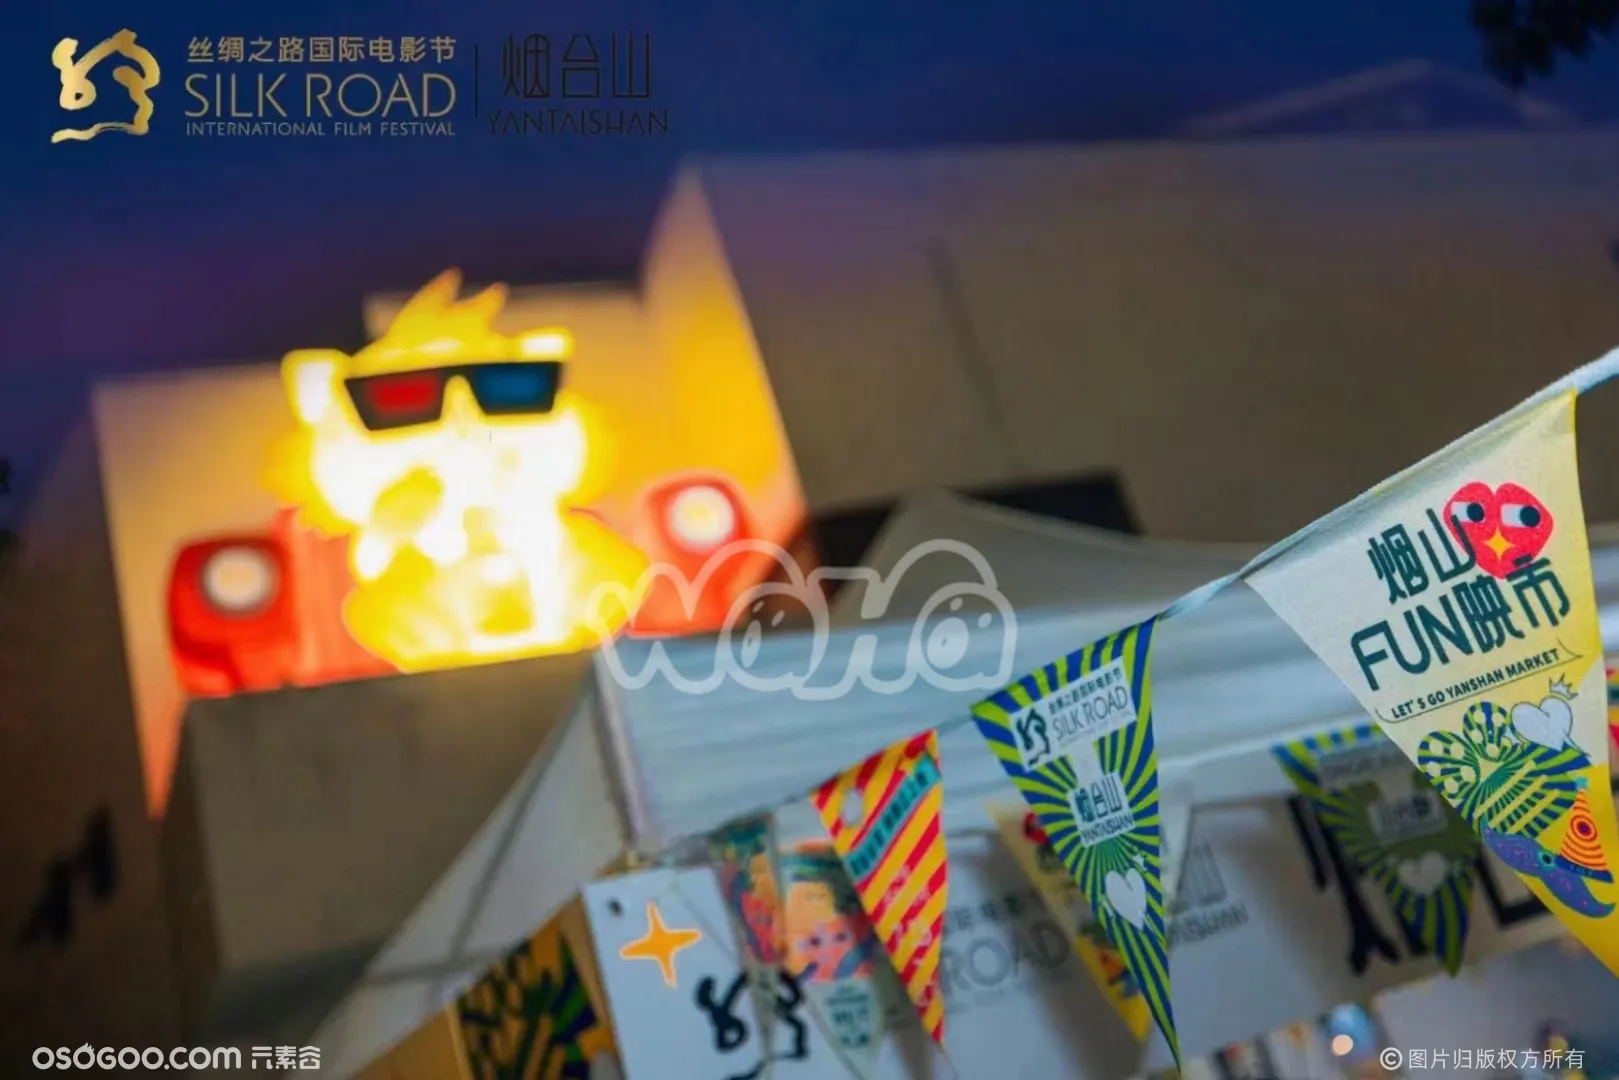 福州烟台山FUN映市丝绸之路国际电影节开幕啦超好逛的市集